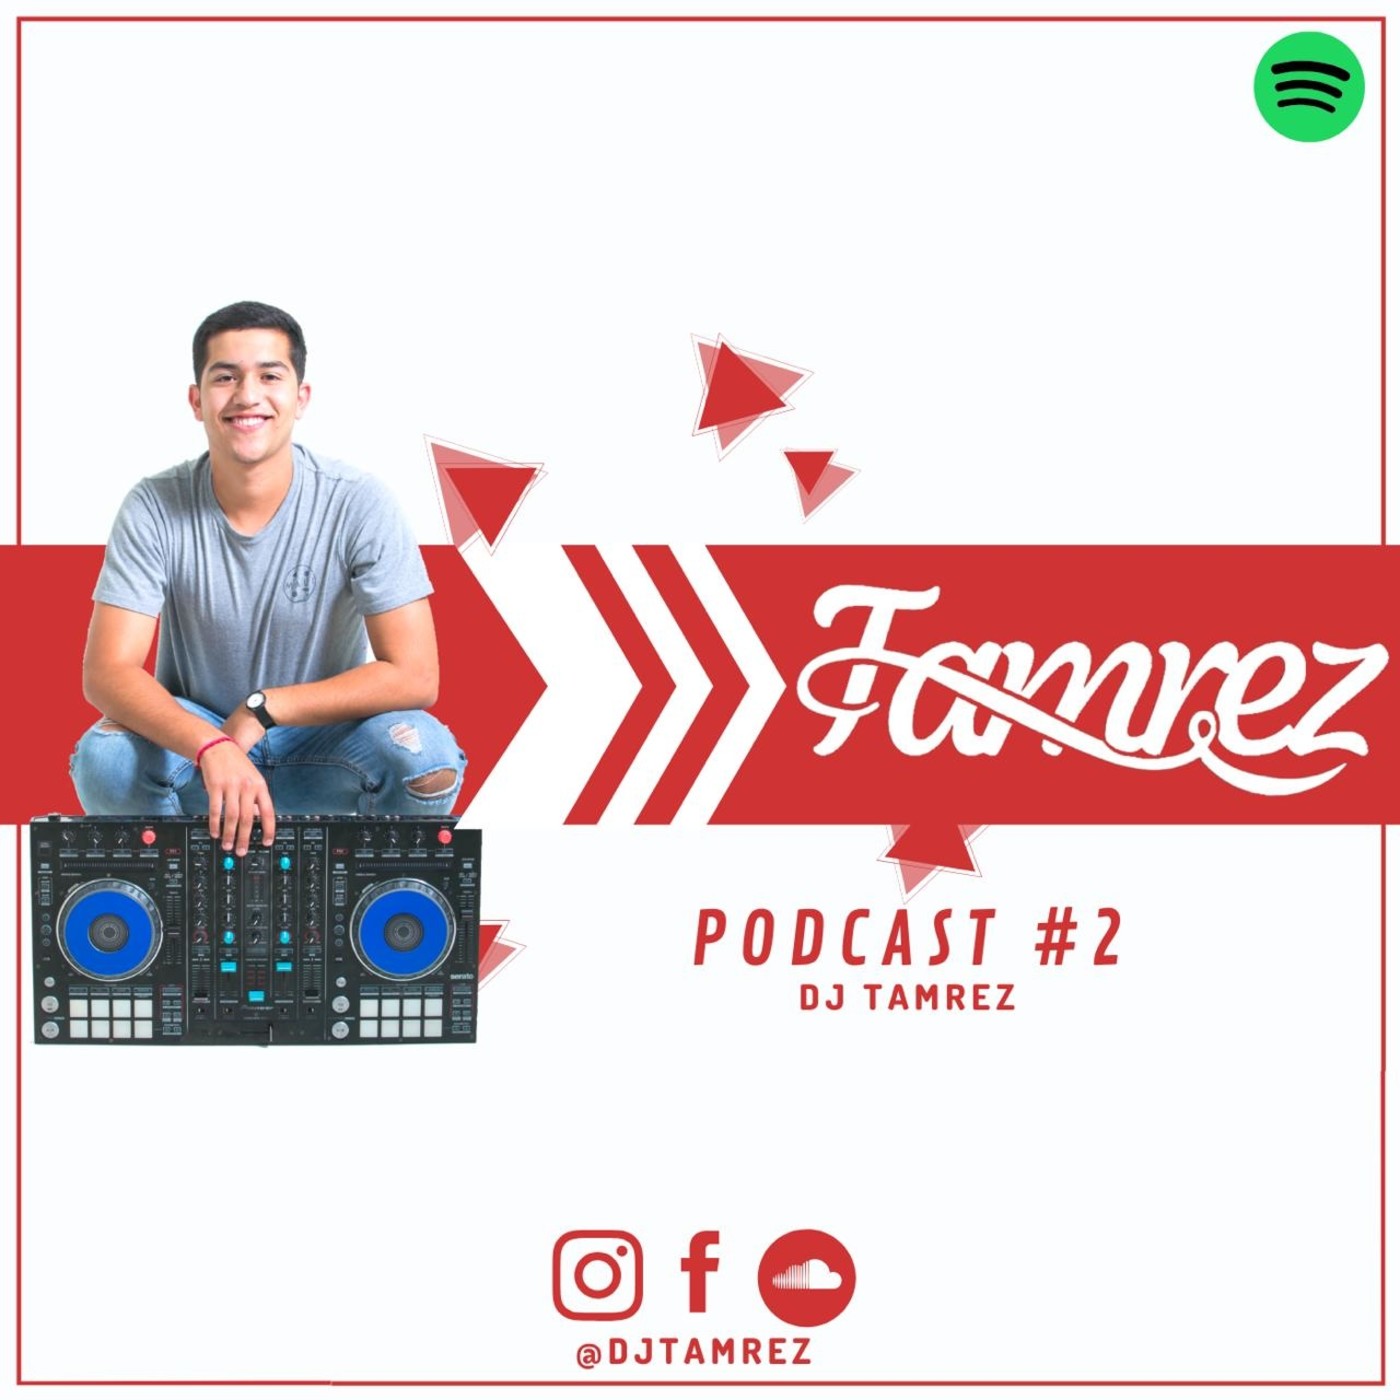 PODCASTS - DJ TAMREZ